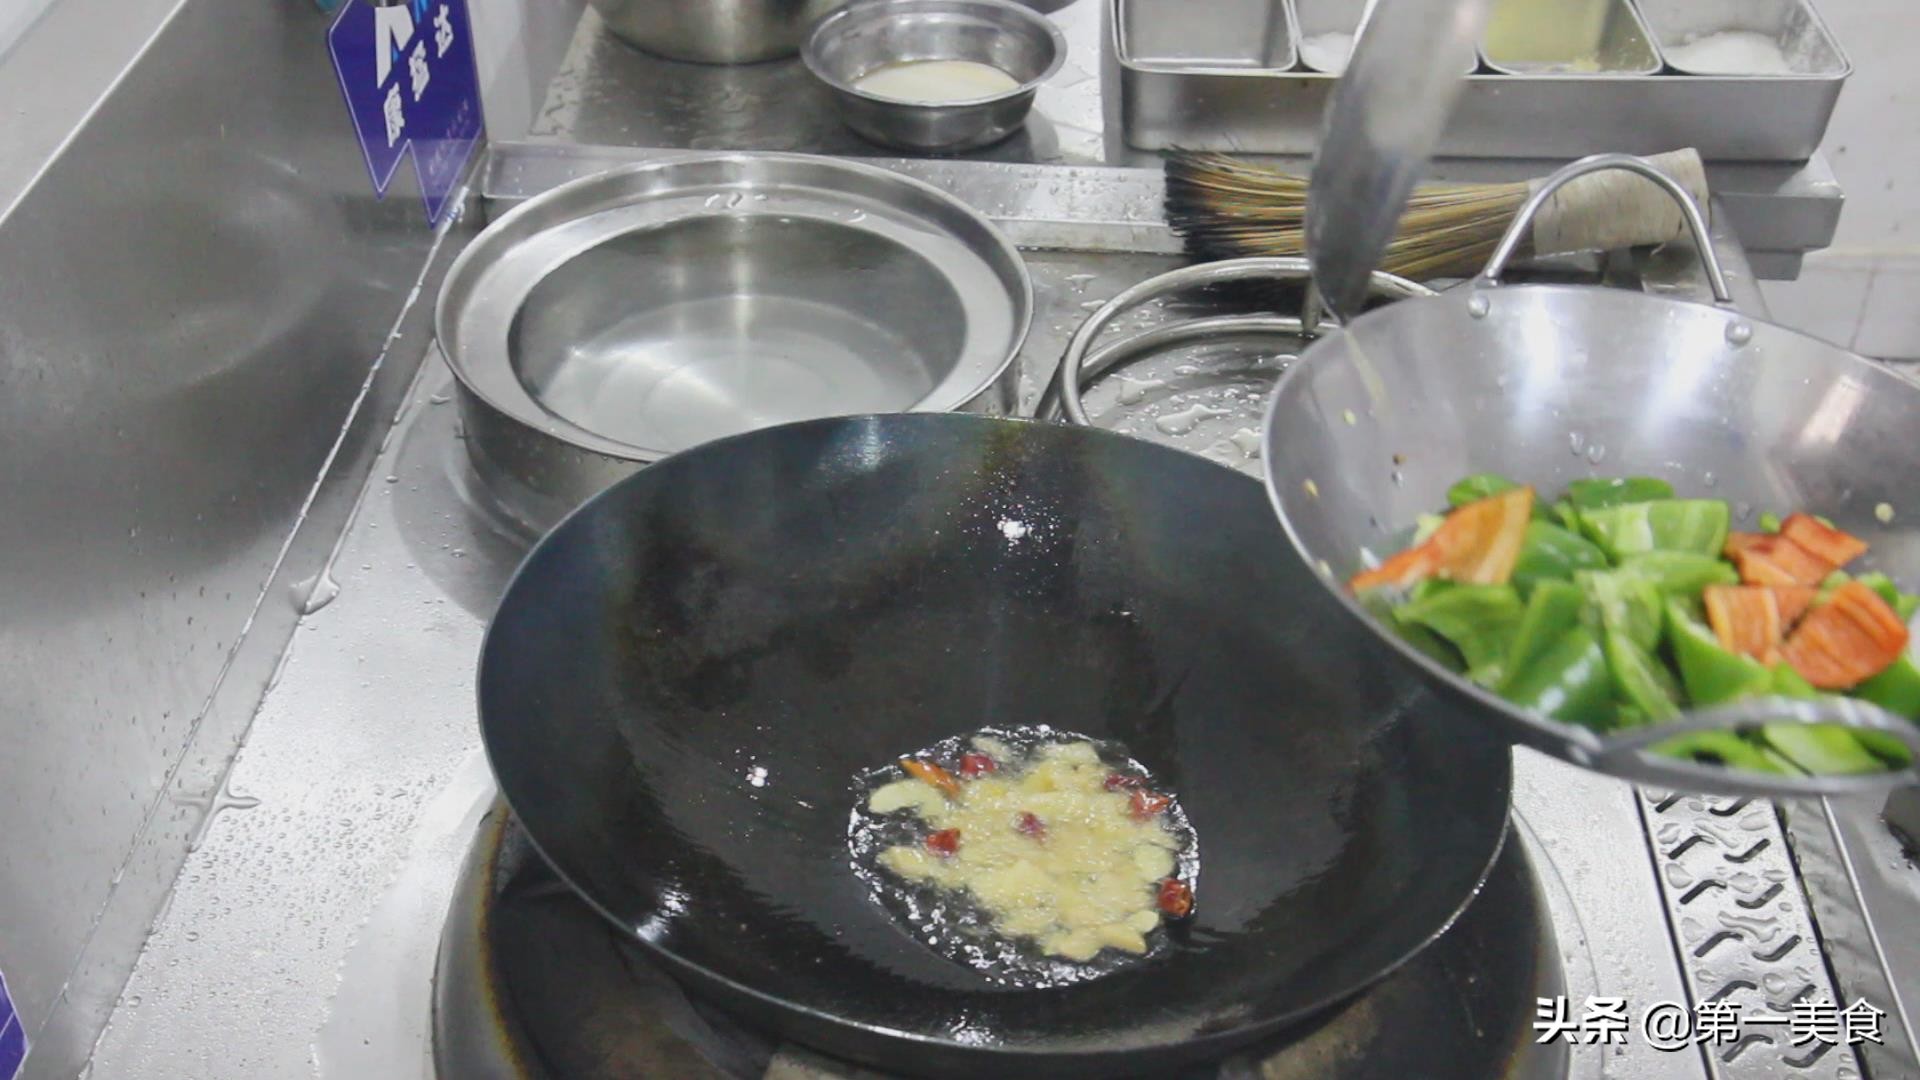 大厨分享家常版“地三鲜”，食材简单，步骤详细，好吃不油腻